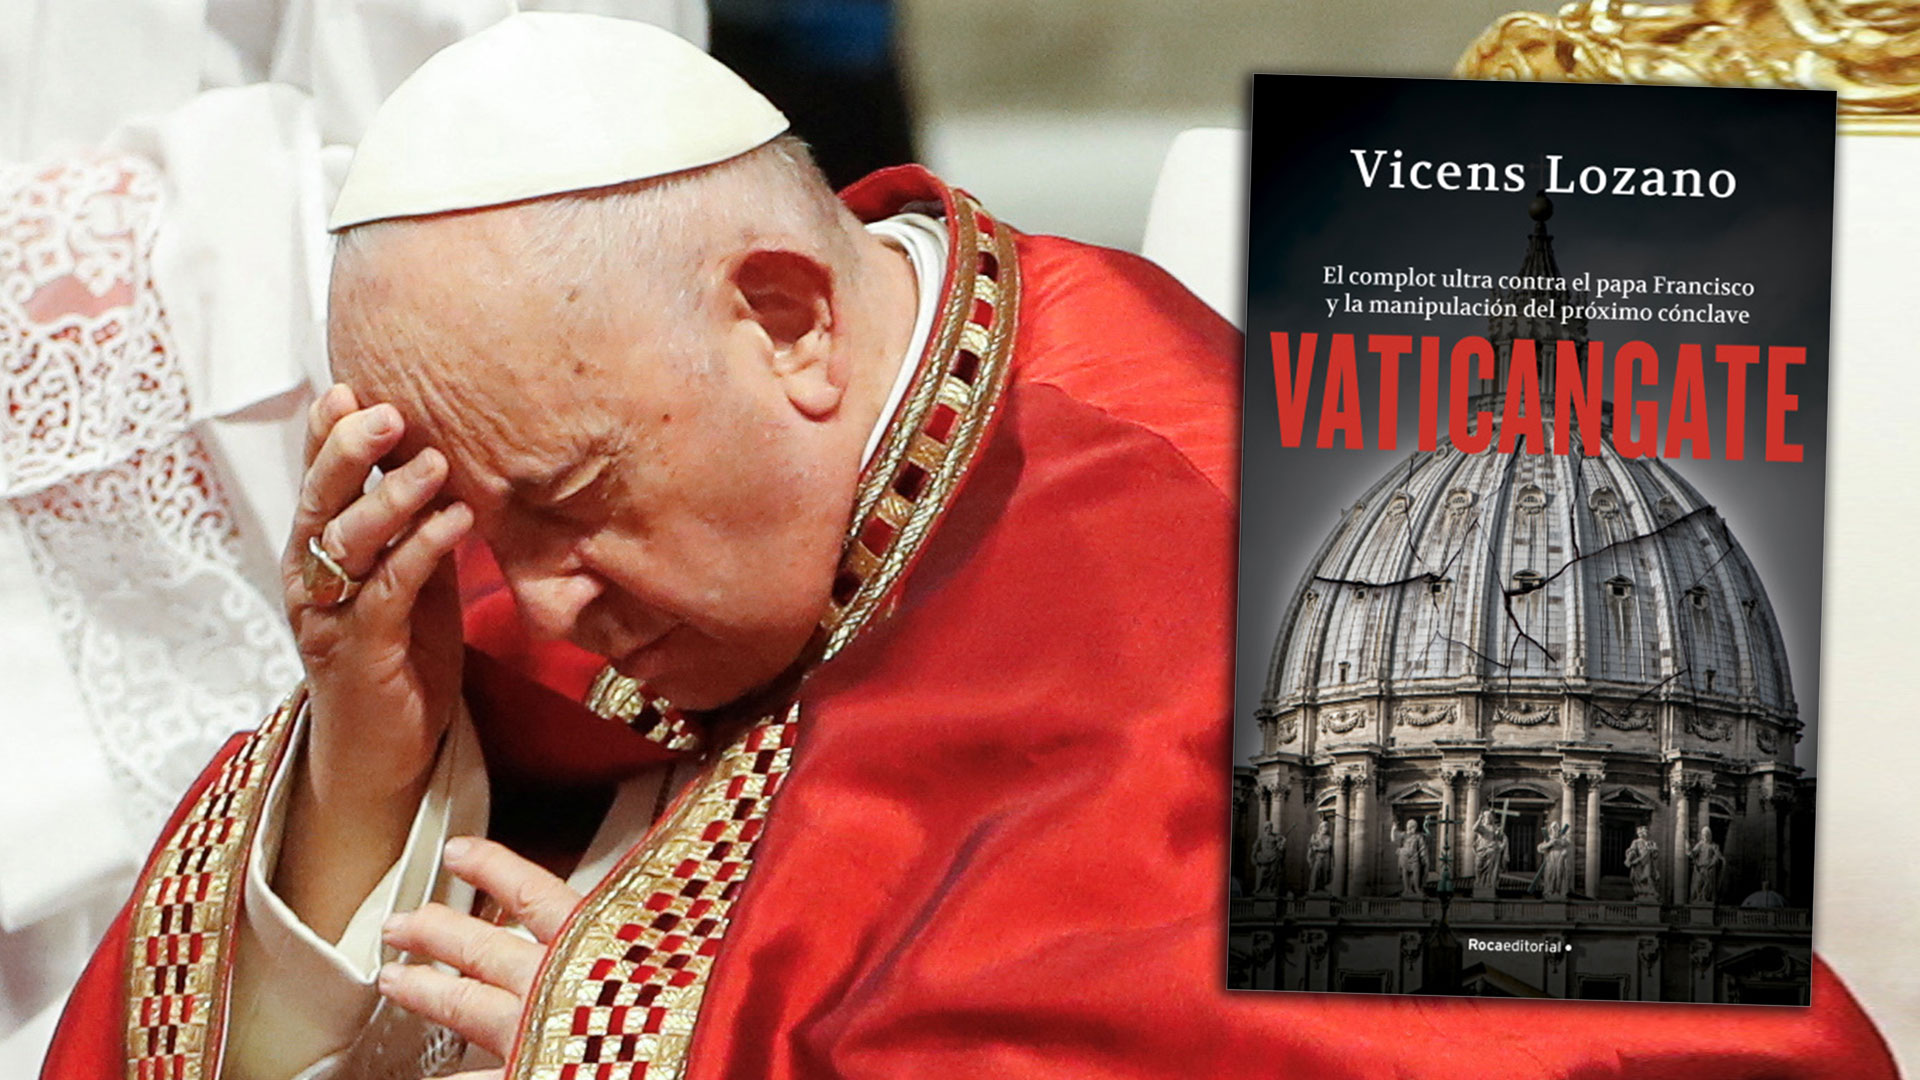 ¿Hay un complot contra el papa Francisco? Las internas secretas del Vaticano y la manipulación del próximo cónclave